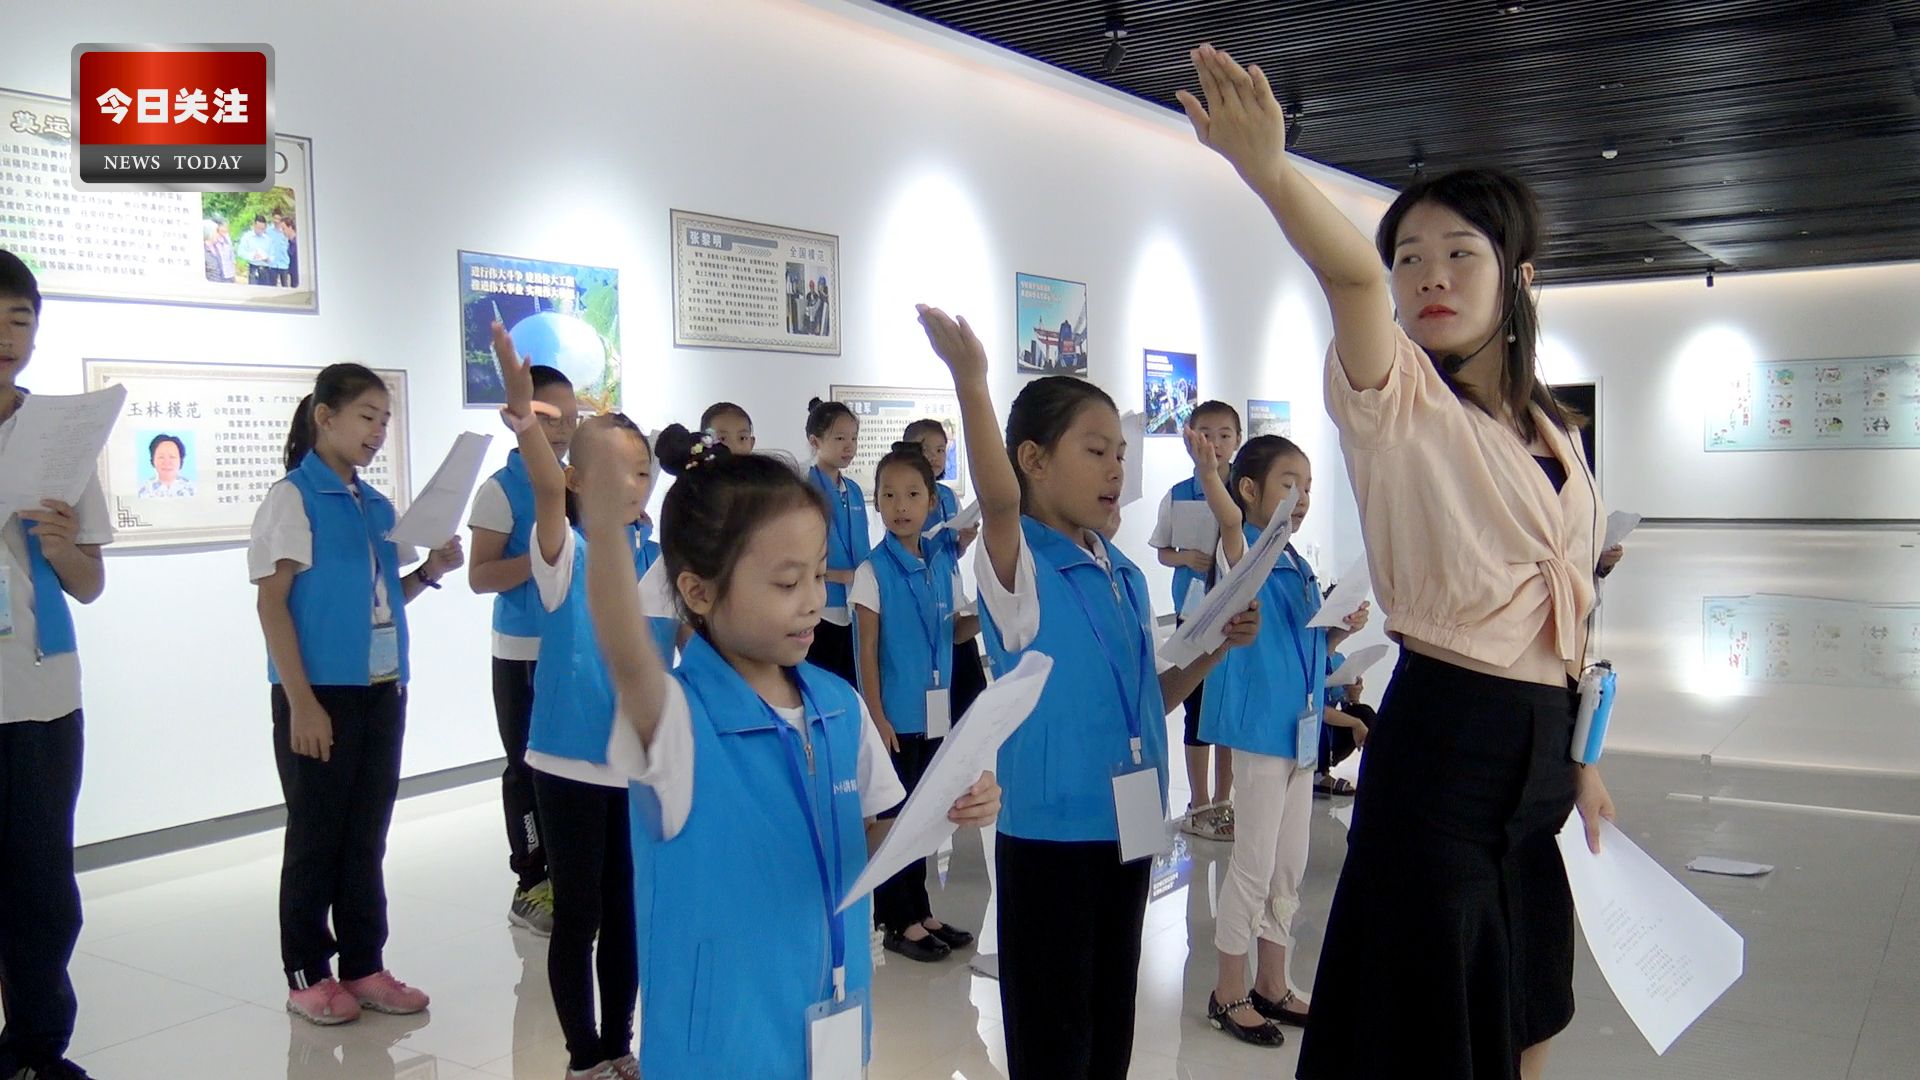 广西资讯 | 玉林市城市规划展示馆成功举办首届"小小讲解员"活动汇报